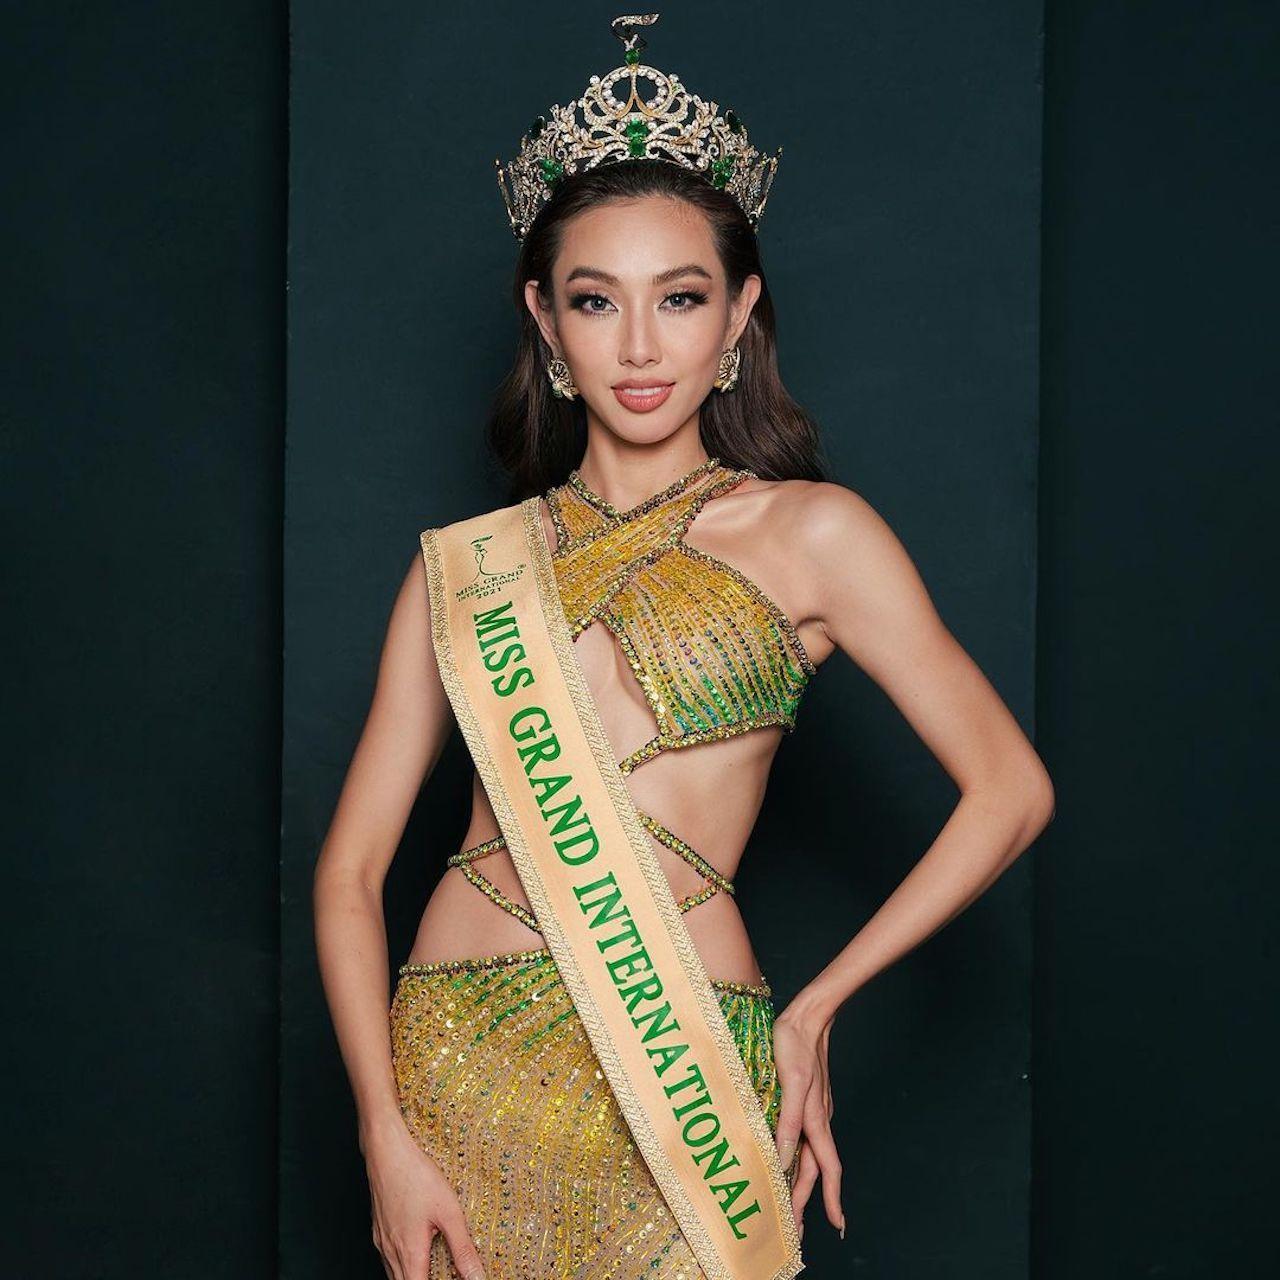 Hoa hậu Thùy Tiên sẽ có 1 năm đương nhiệm, thực hiện vai trò và trọng trách của mình trước khi trao lại vương miện cho người kế nhiệm